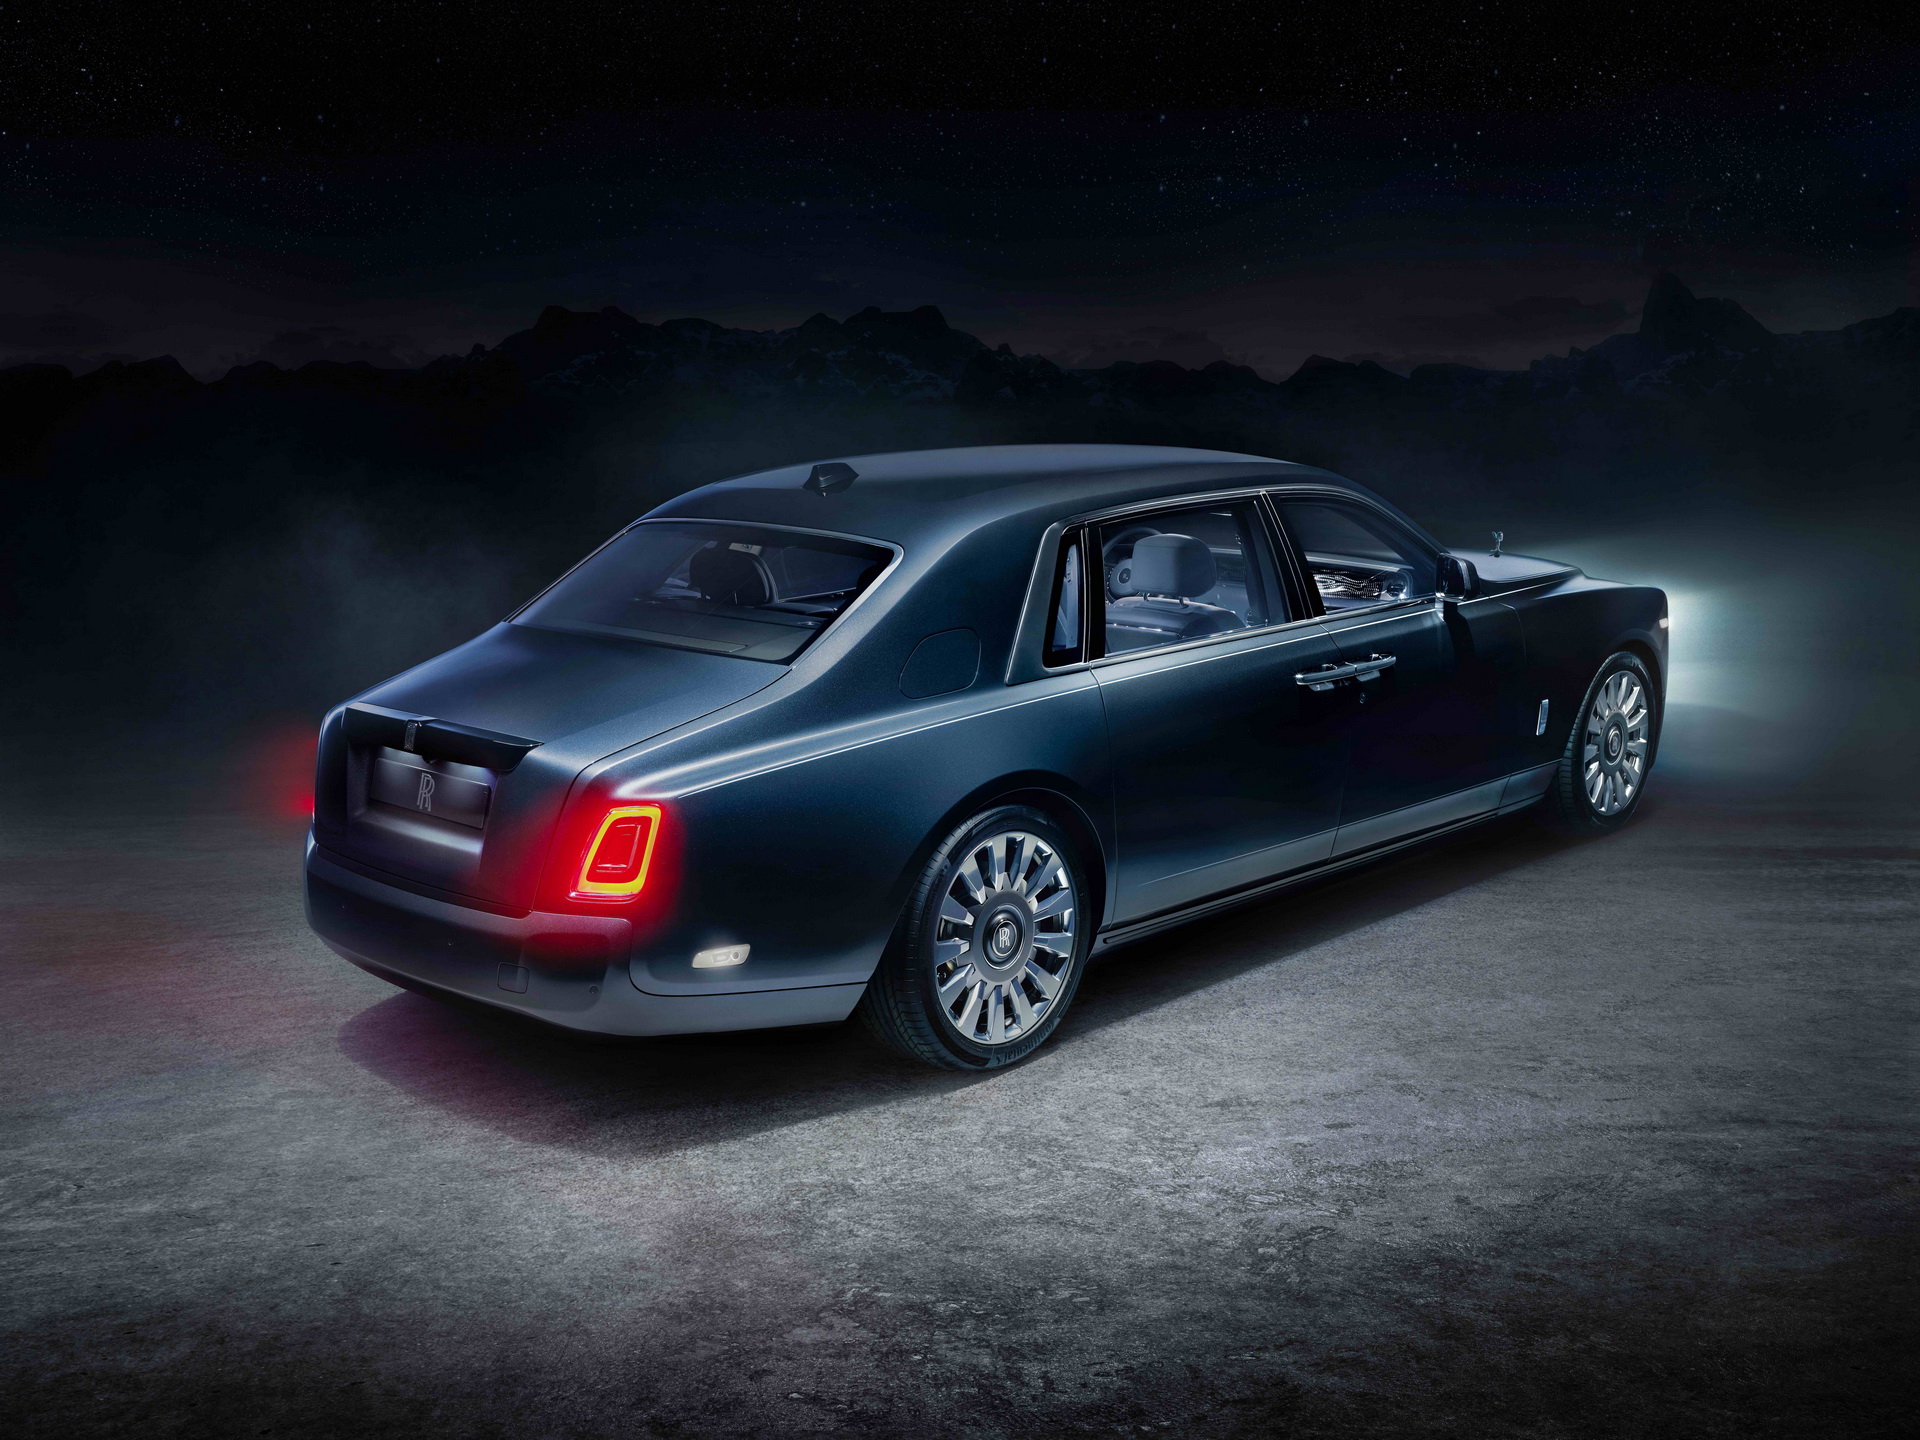 Rolls-Royce - Với hơn 100 năm lịch sử và danh tiếng vang dội trong ngành ô tô, hãy cùng khám phá thế giới của Rolls-Royce và thưởng thức những vật phẩm xe hơi sang trọng nhất thế giới.